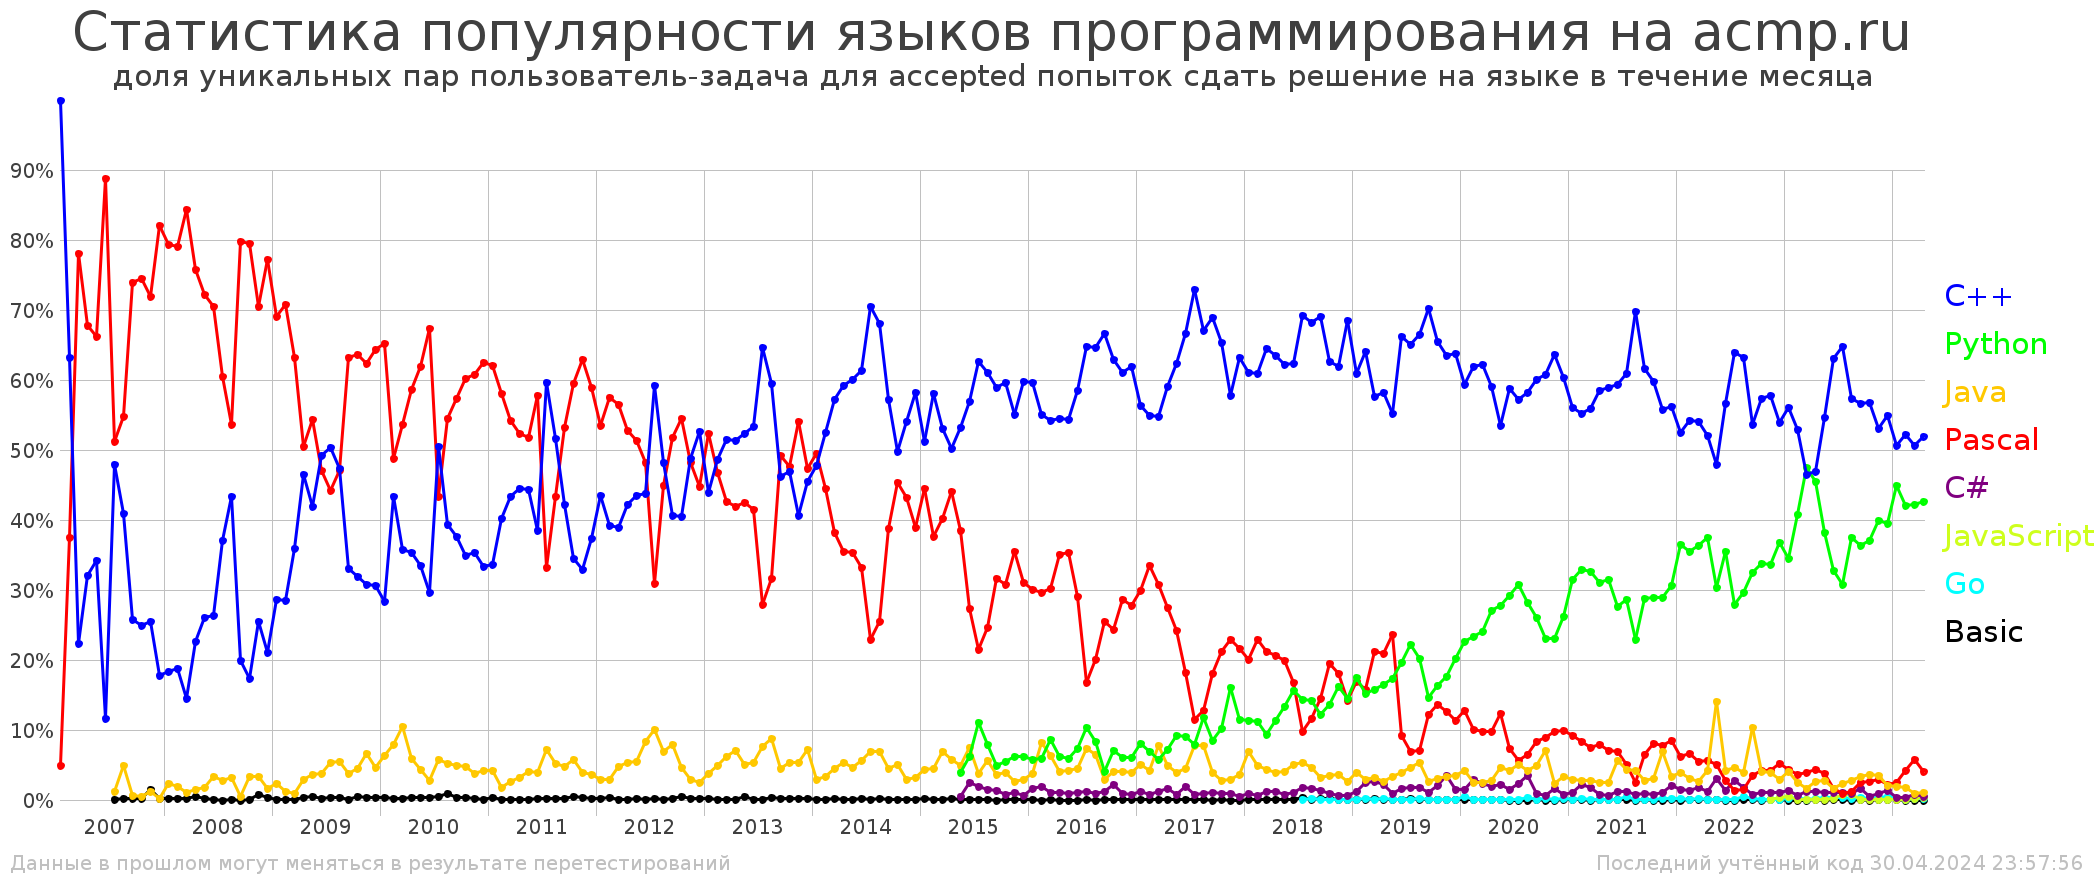 График популярности языков программирования на acmp.ru